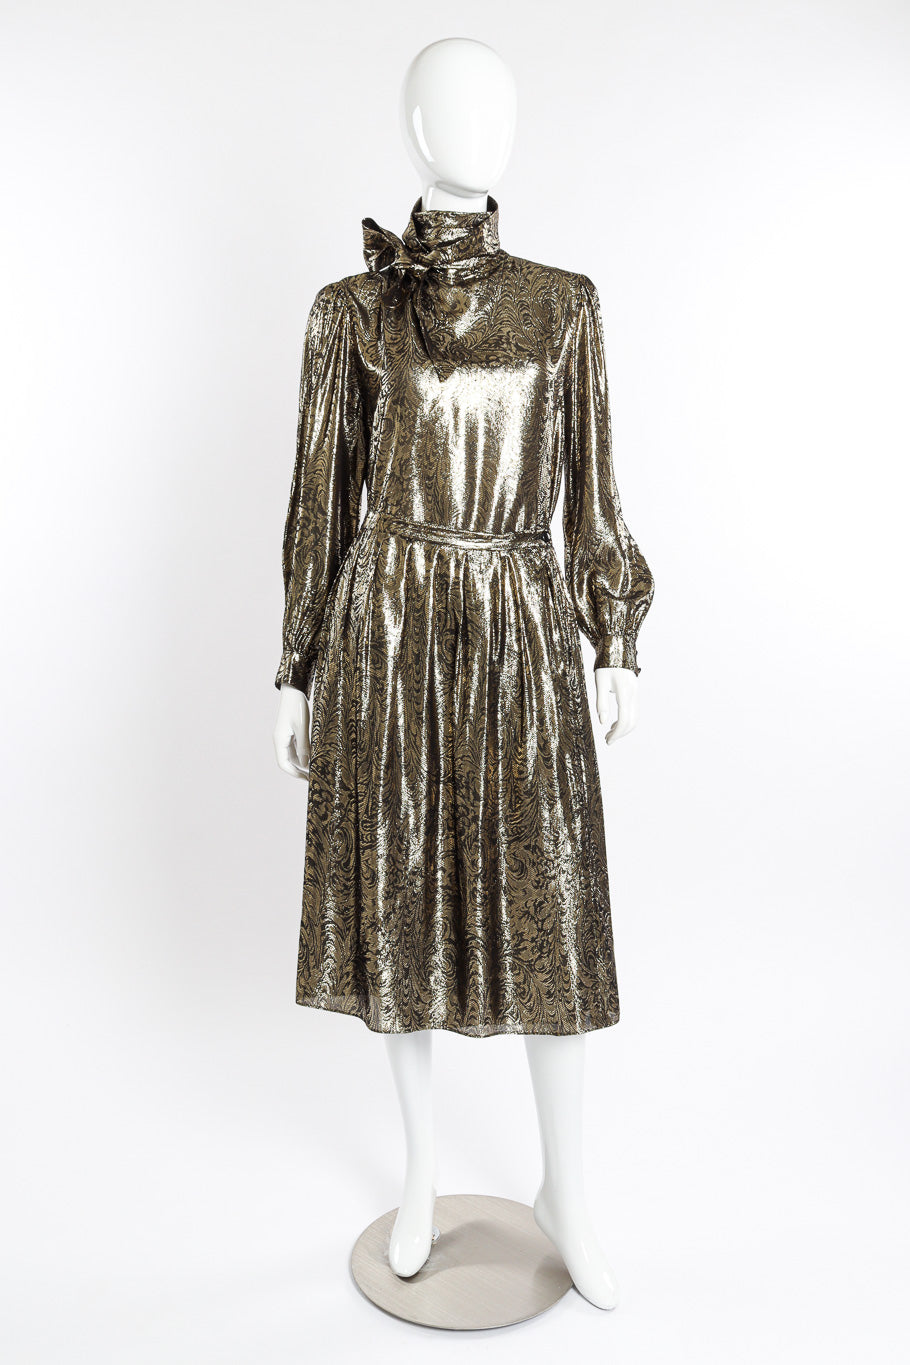 Vintage Nolan Miller Lamé Jacquard Blouse & Skirt Set front on mannequin @recessla